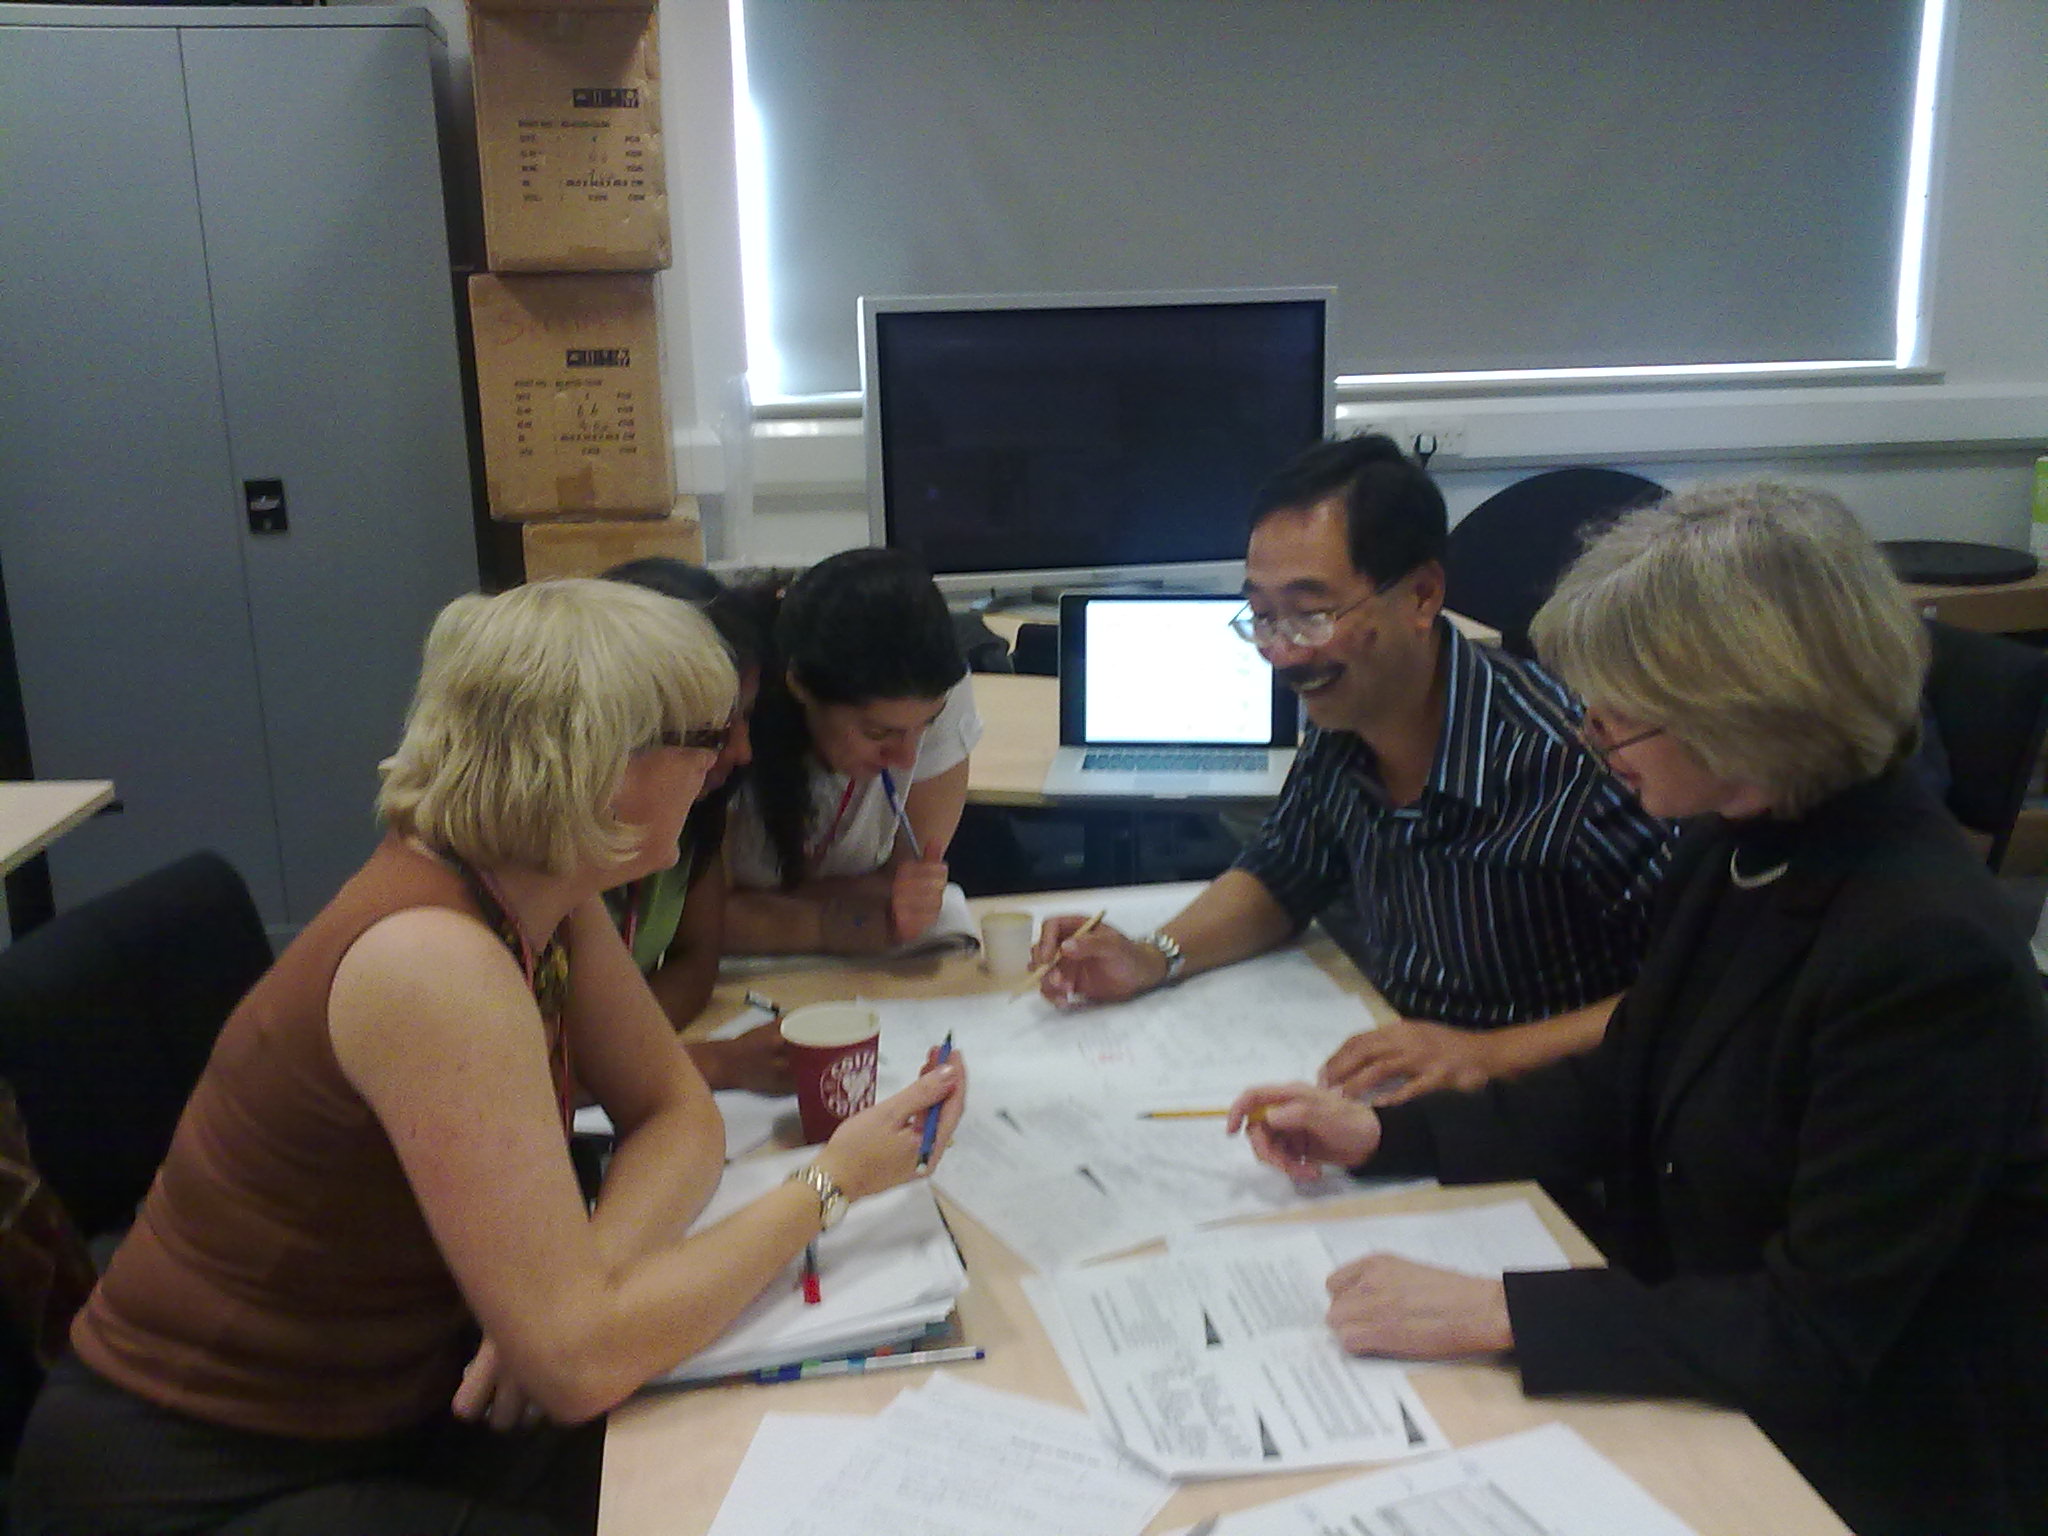 UBiRD team working with Prof. Sanderson